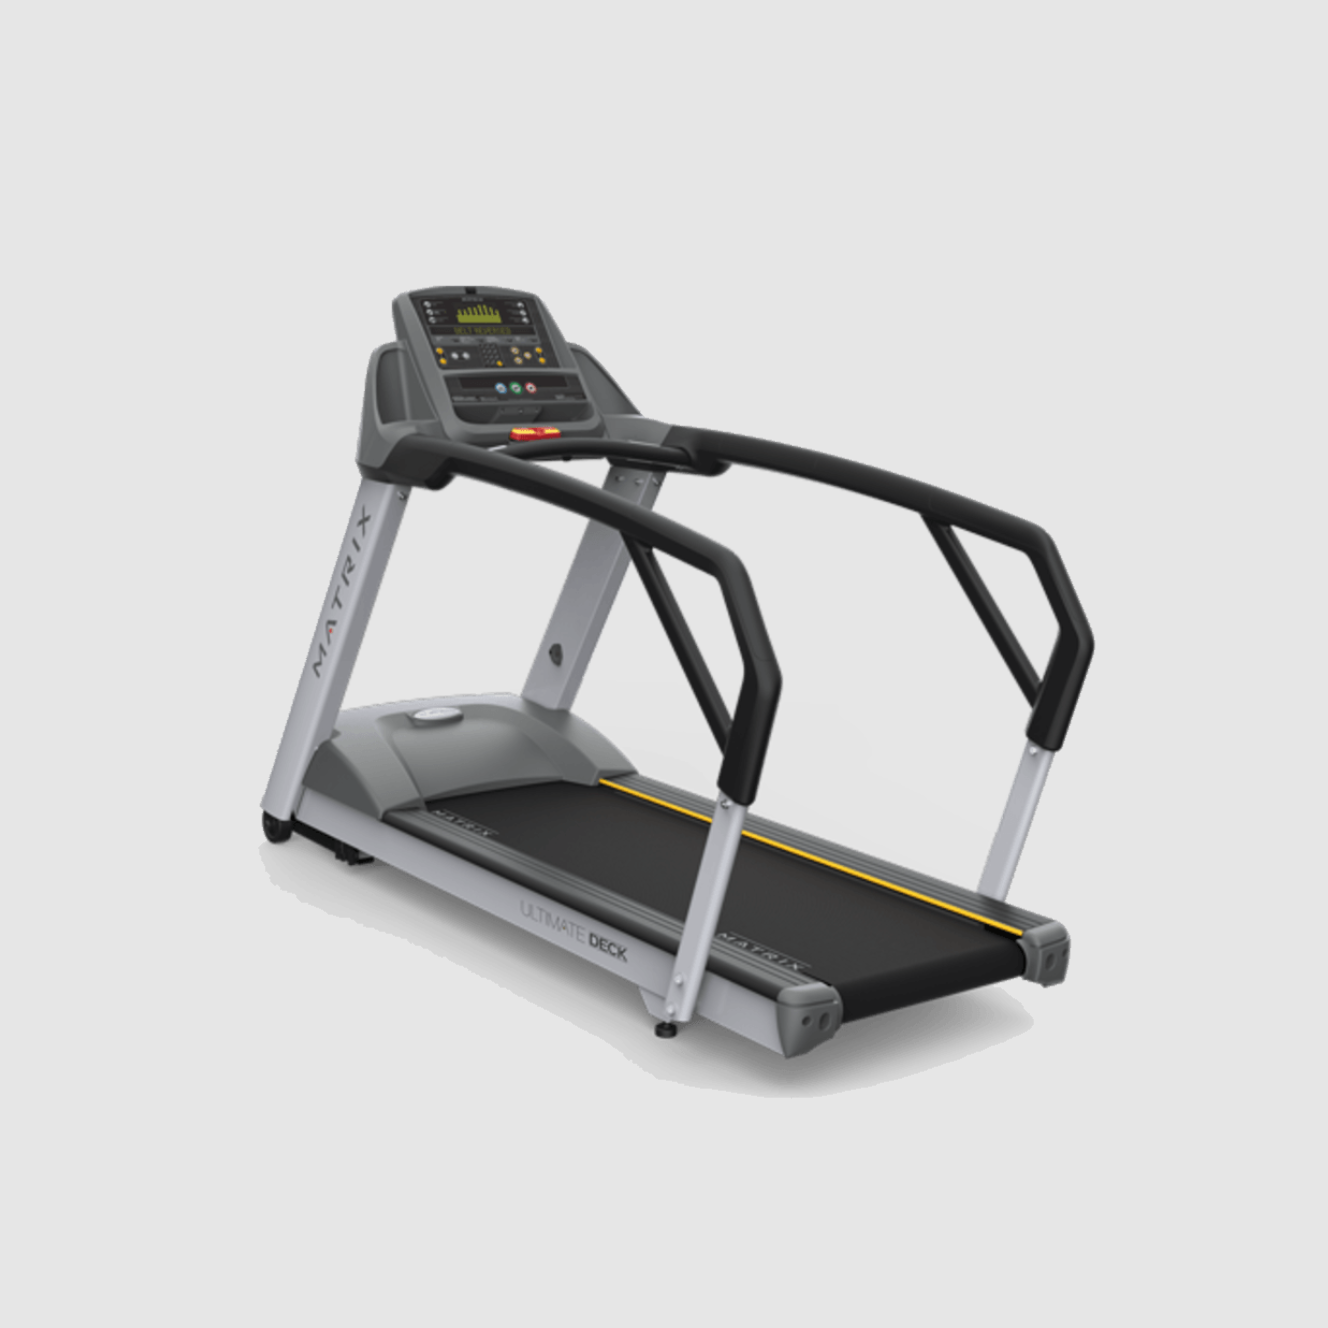 T3xm Treadmill